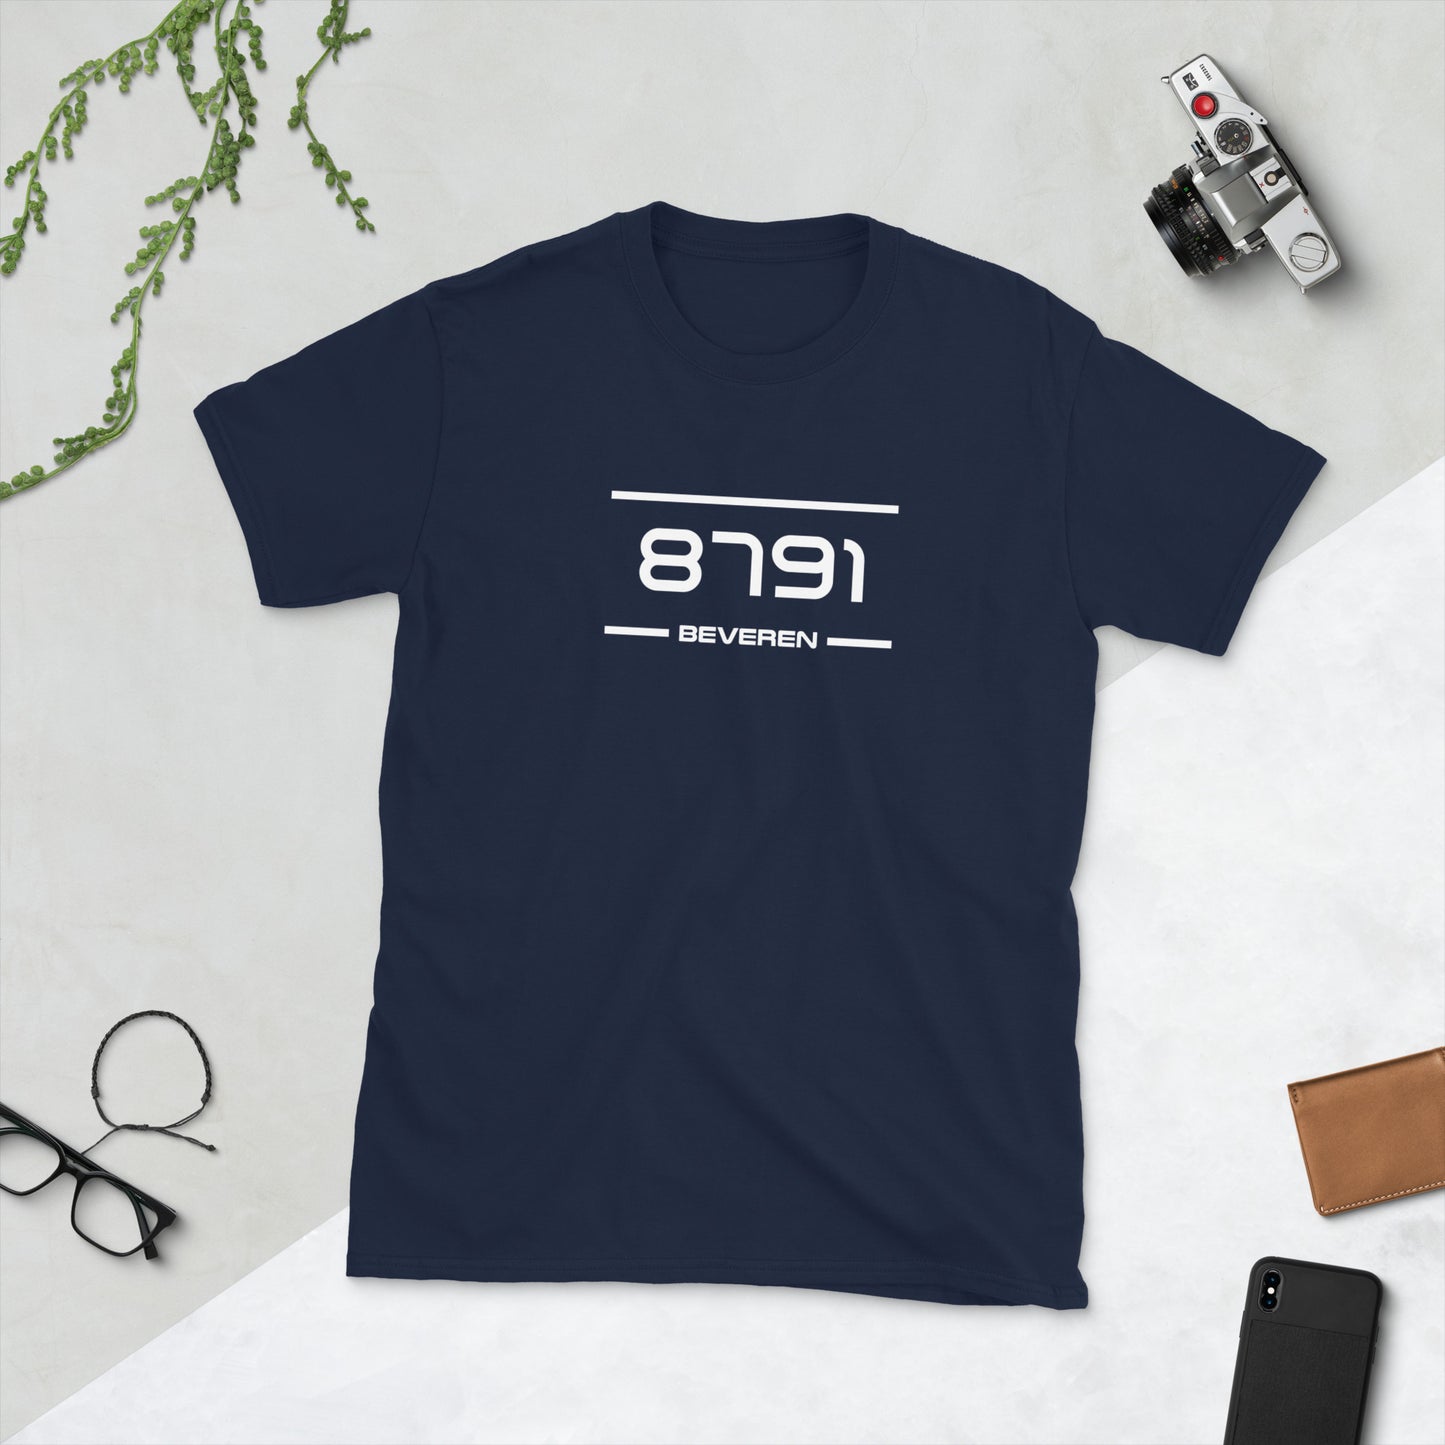 Tshirt - 8791 - Beveren